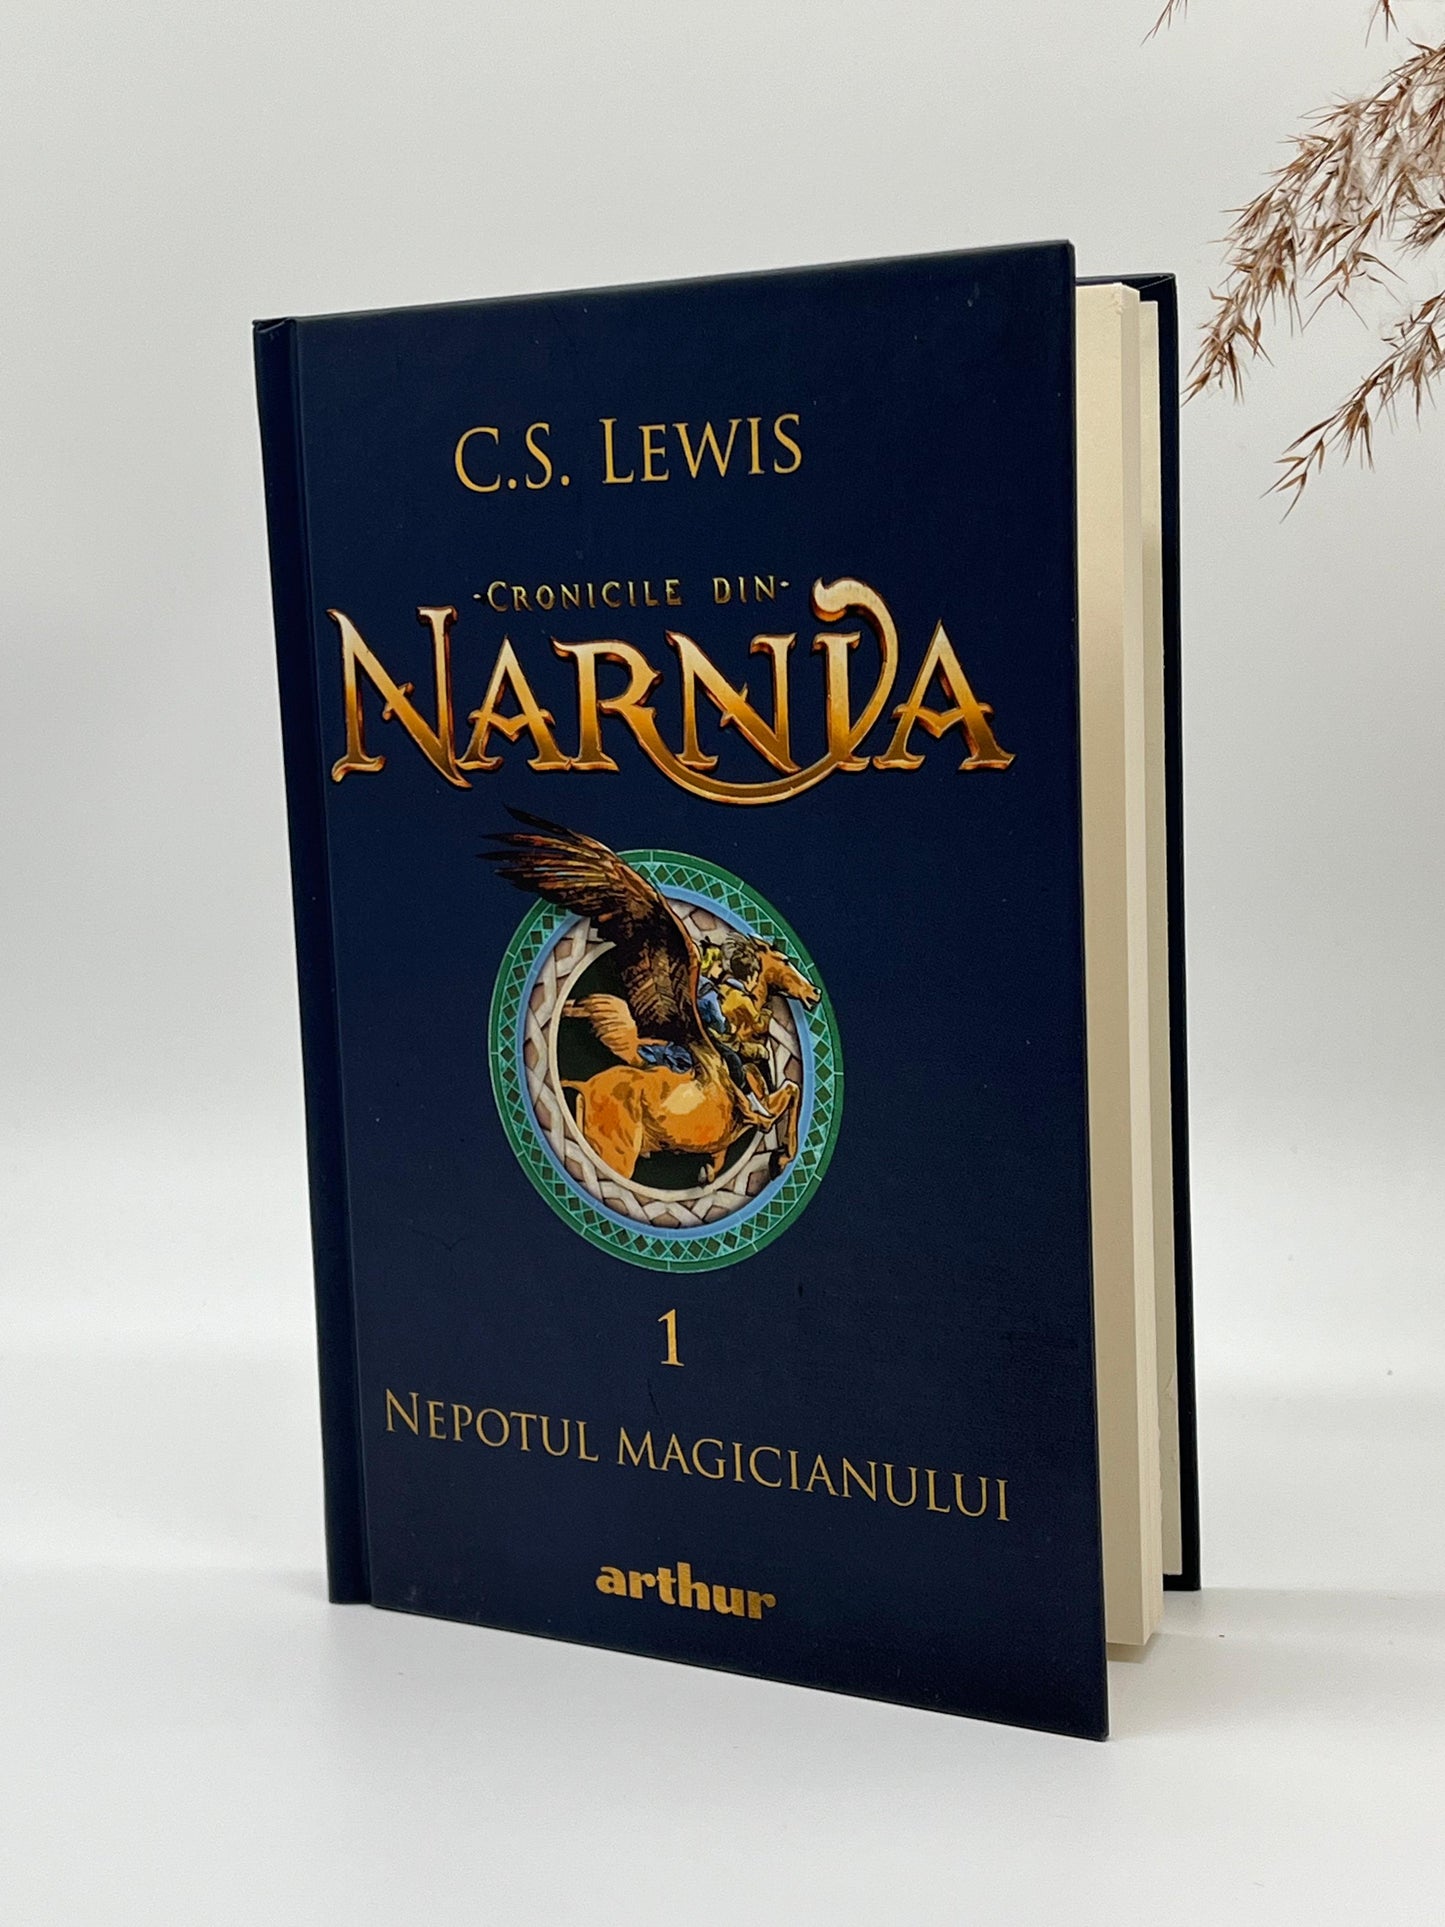 Nepotul magicianului [Cronicile din Narnia - Vol 1]
C. S. Lewis